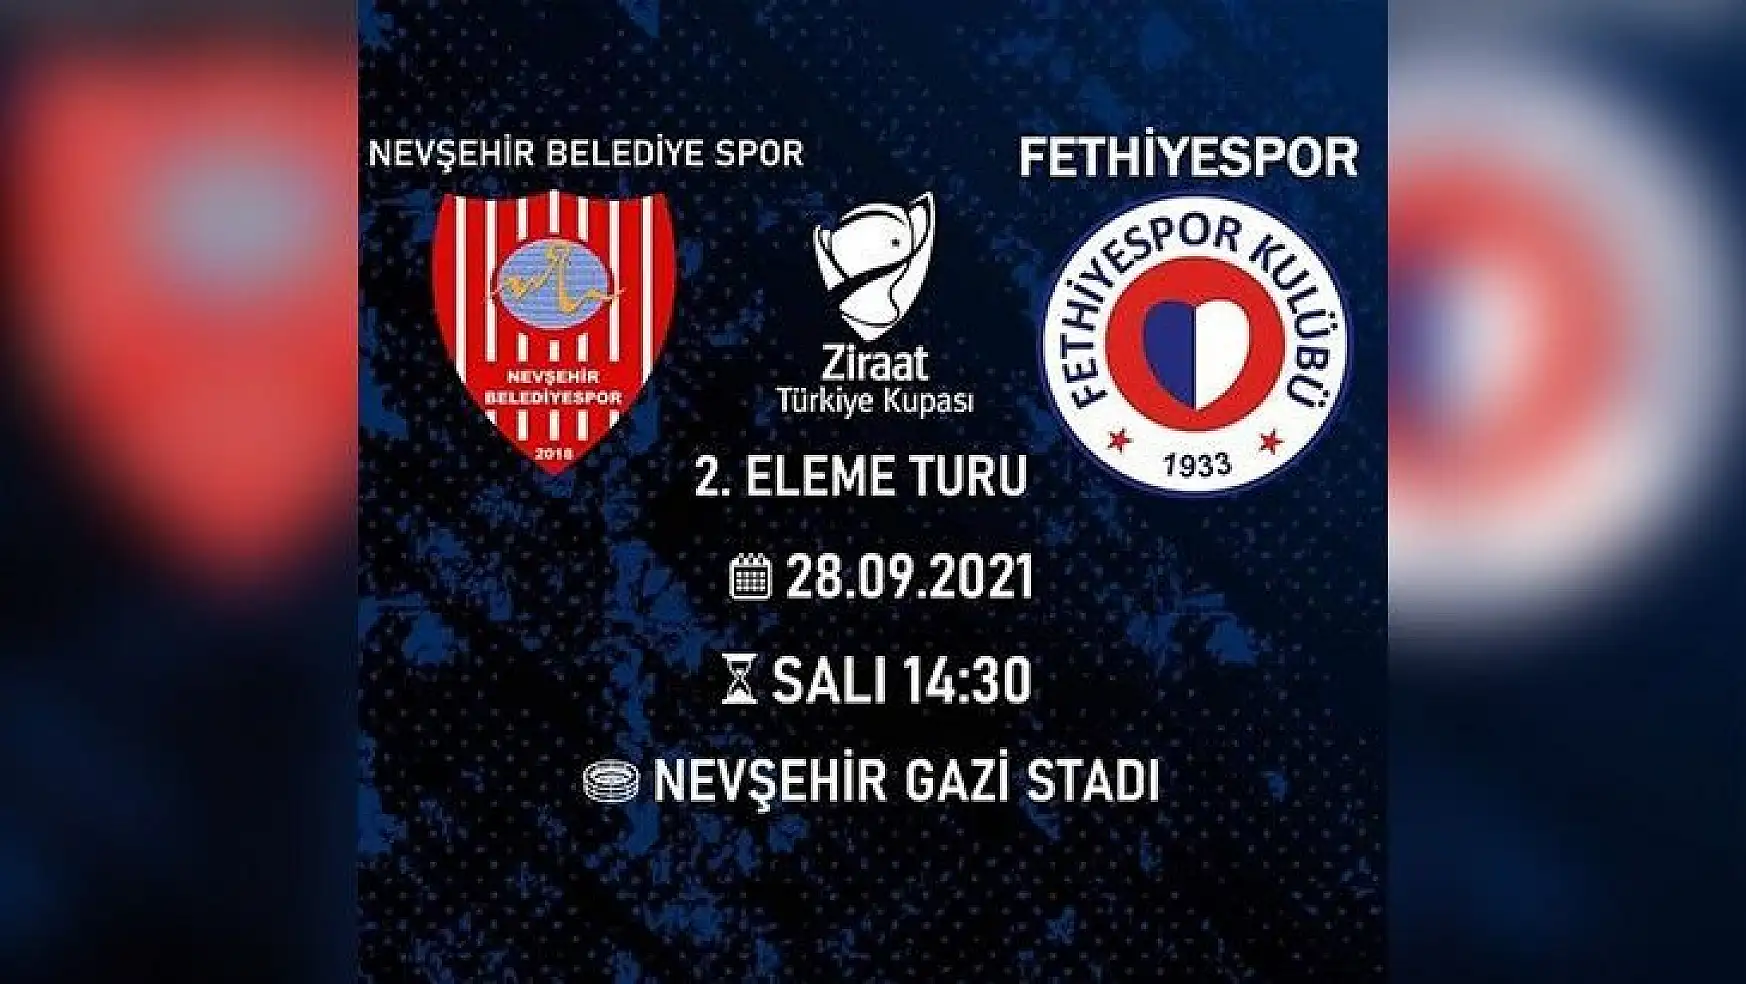 Fethiyespor kupa maçında (bugün) Nevşehir Belediyespor ile karşılaşacak